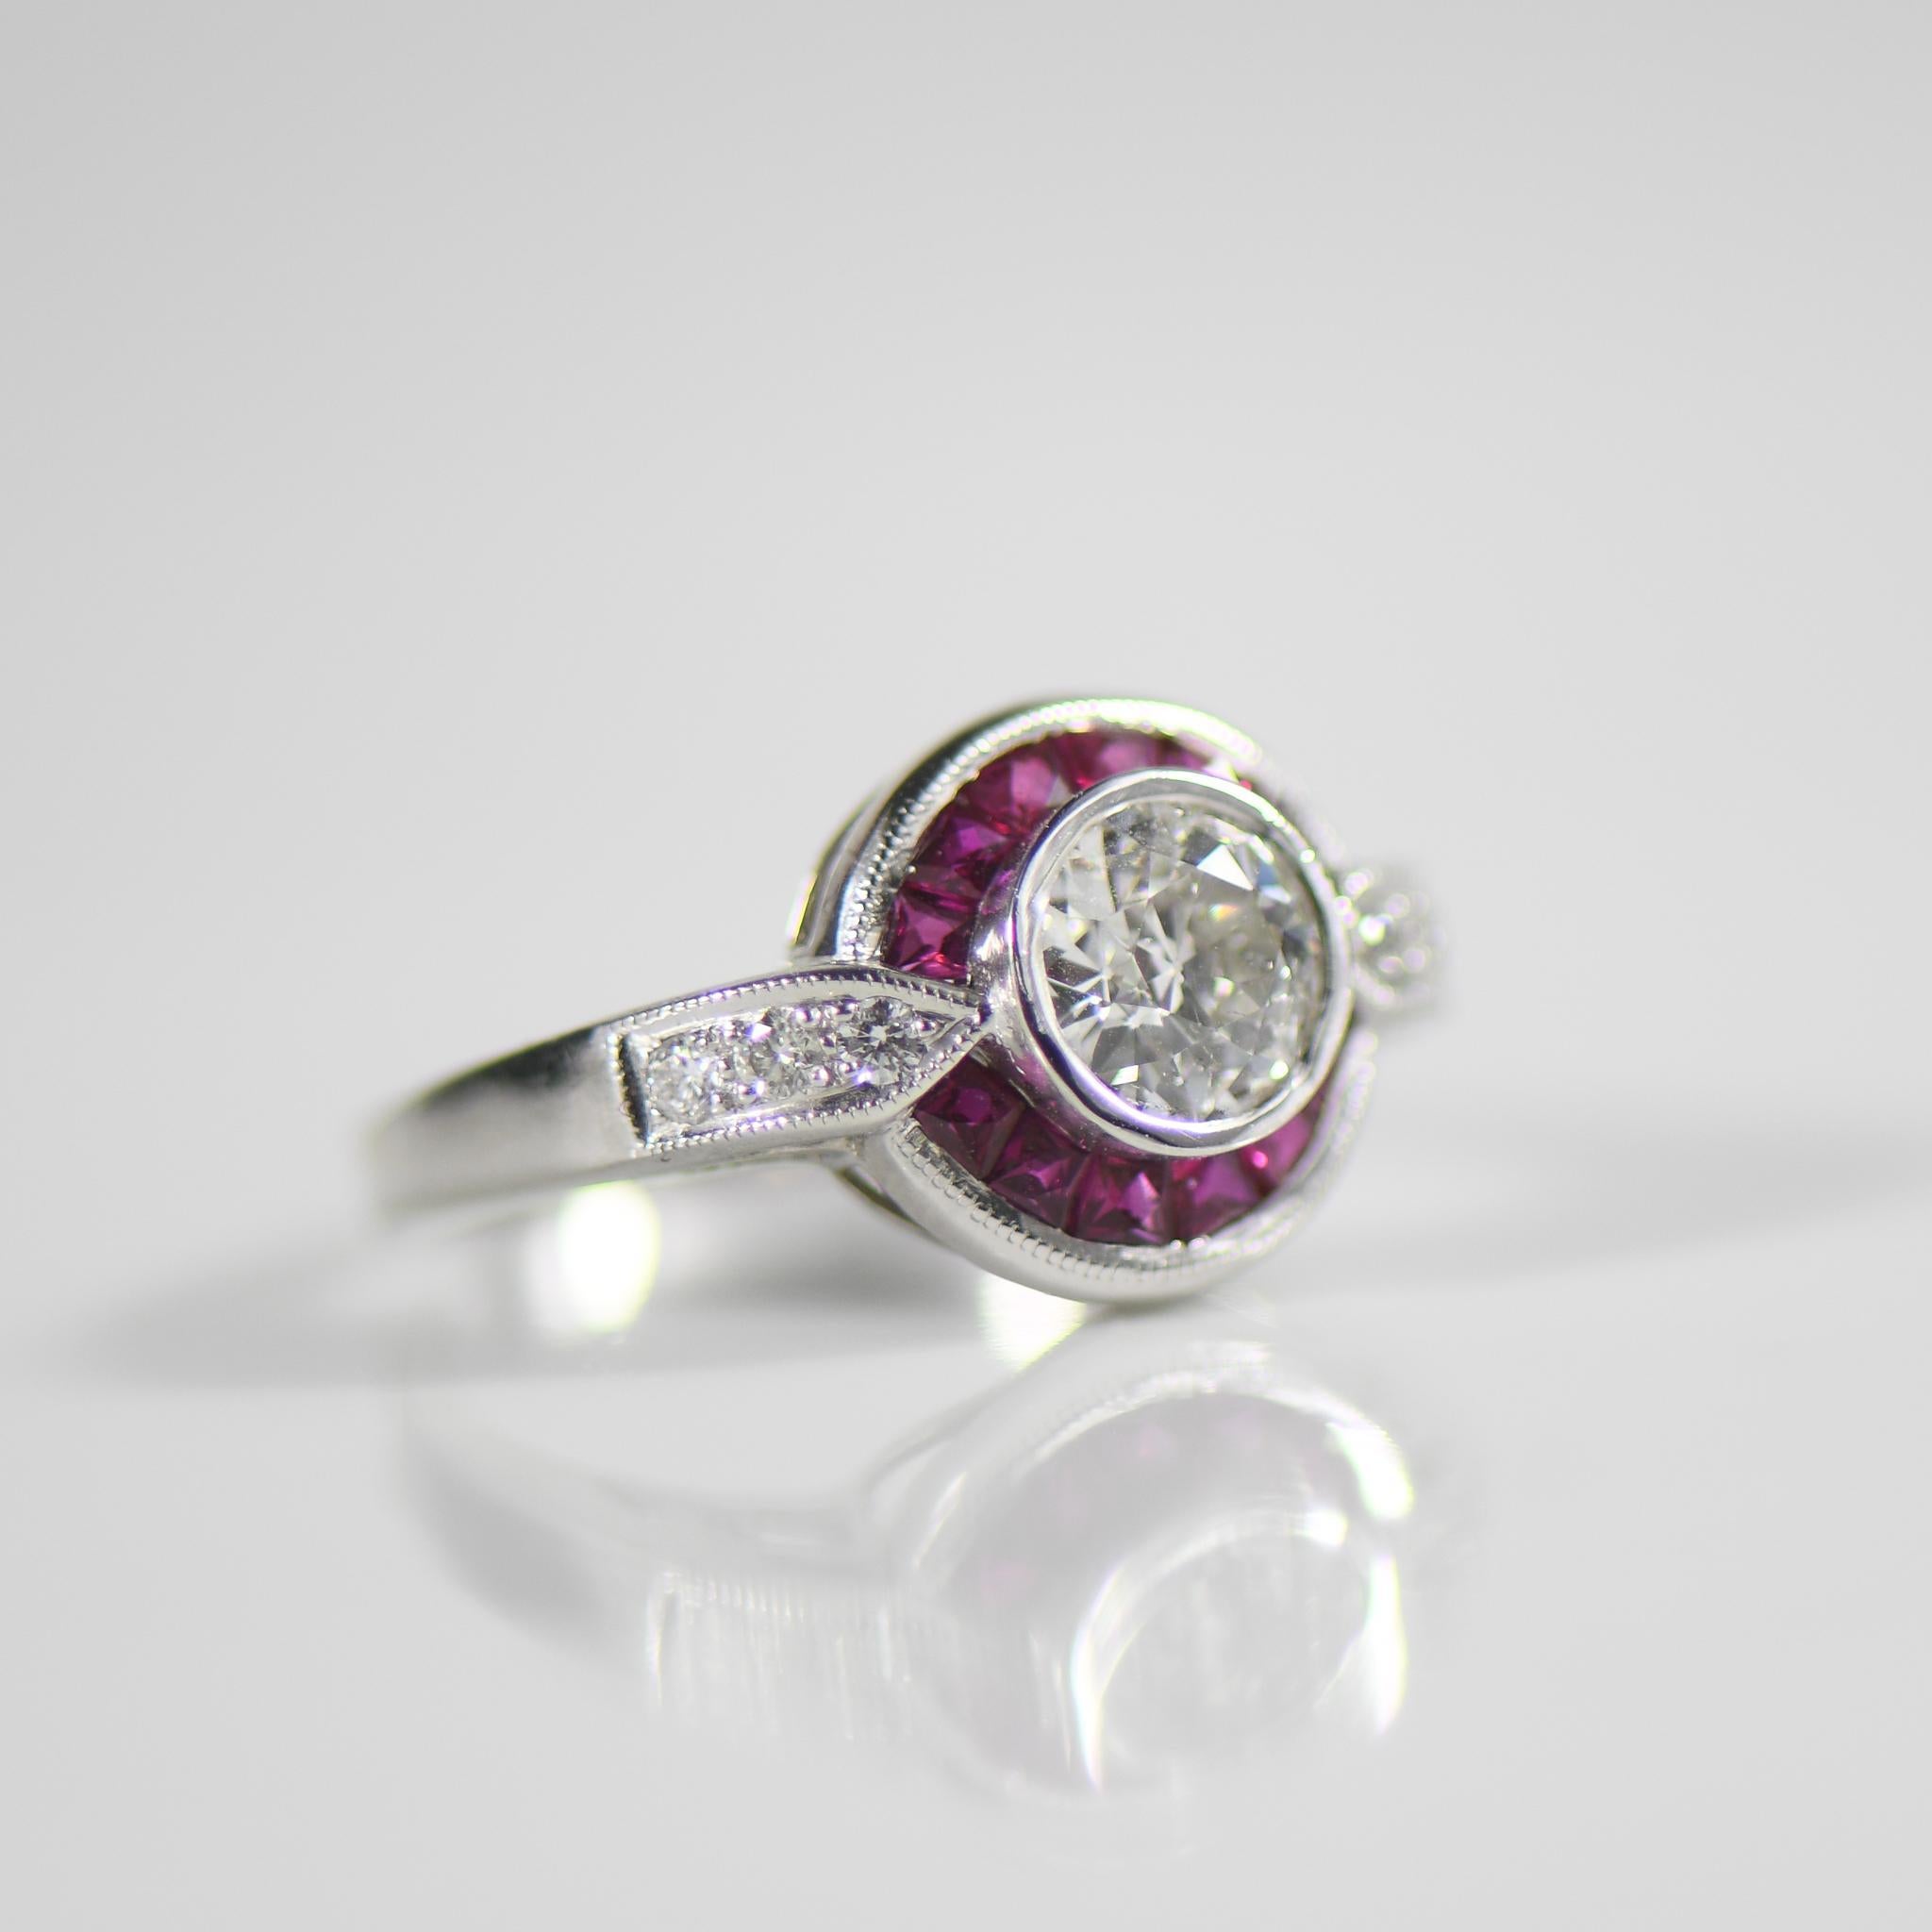 Lassen Sie sich mit diesem atemberaubenden Diamantring, der an die Opulenz und Raffinesse dieser Epoche erinnert, in die glamouröse Ära des Art déco entführen. Sein Herzstück ist ein schillernder, zertifizierter alteuropäischer Diamant von 0,90